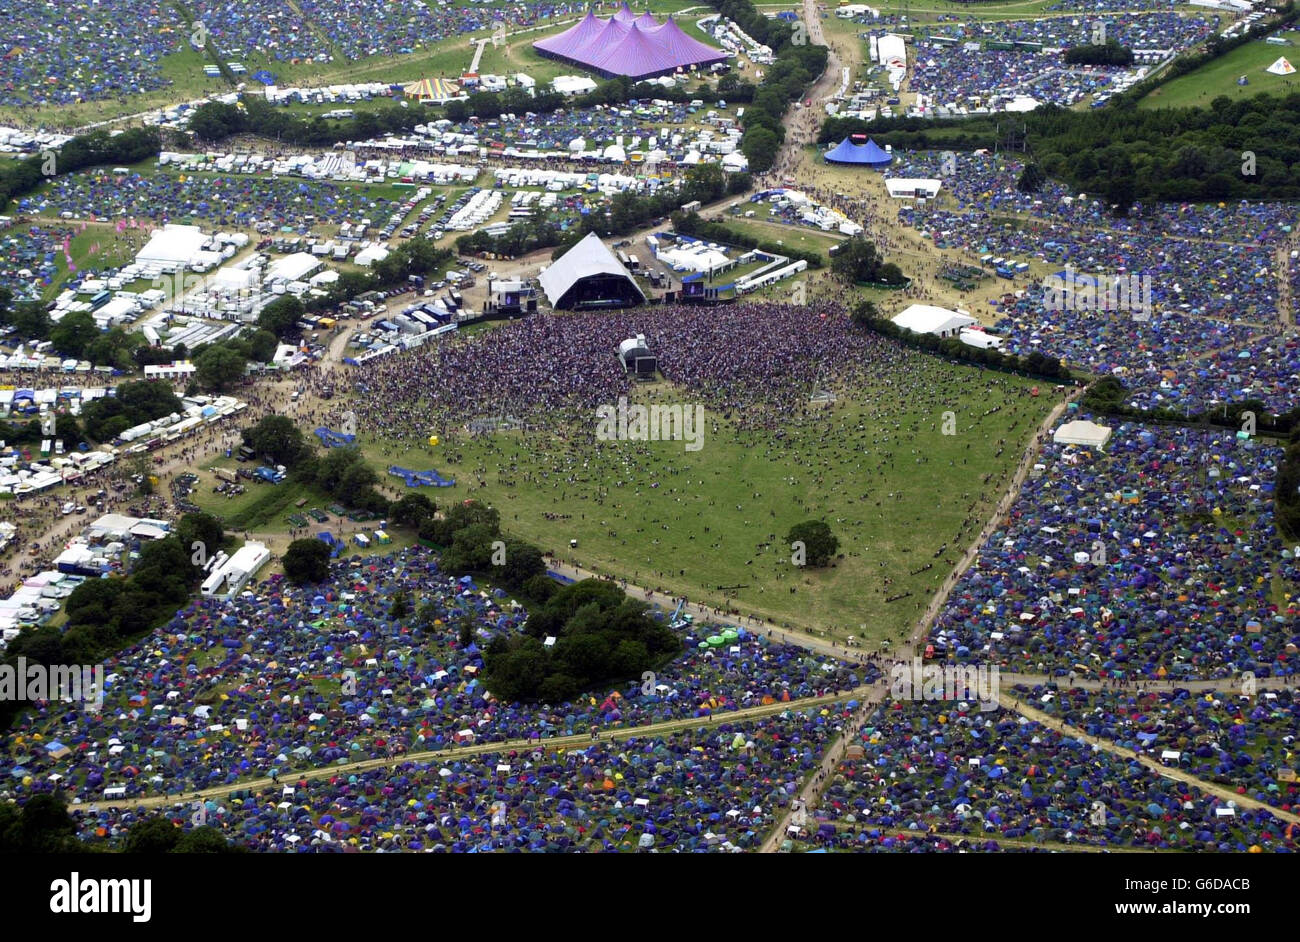 Vista aerea dall'elicottero di polizia Avon e Somerset/Gloucestershire del festival di Glastonbury, il primo giorno del grande evento musicale. Foto Stock